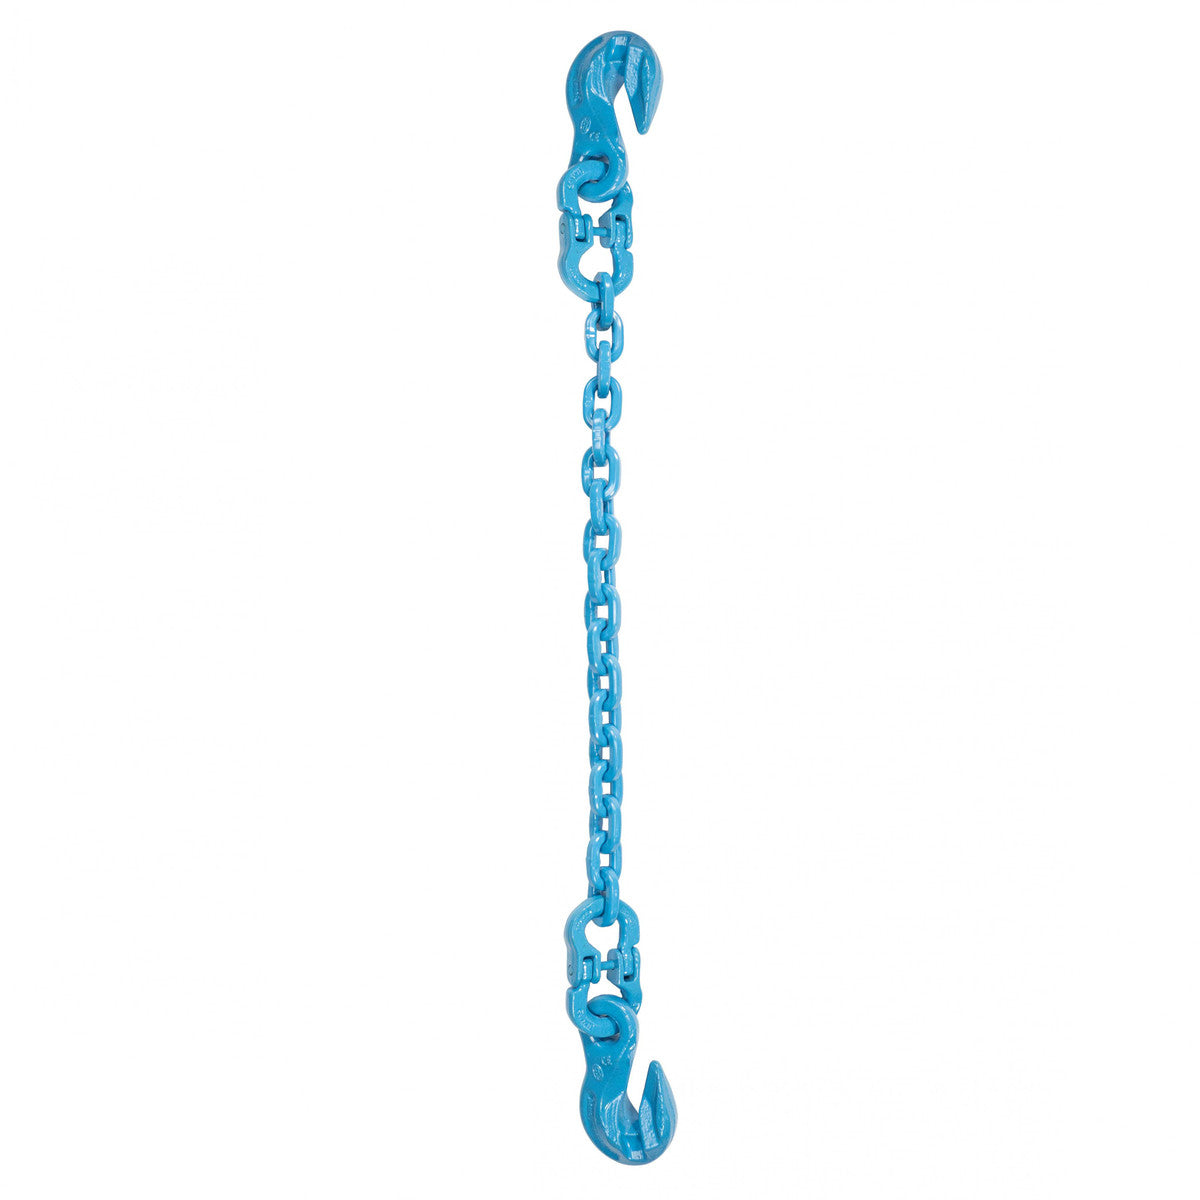 9/32" x 20' - Pewag Single Leg Chain Sling w/ Grab & Grab Hooks - Grade 120